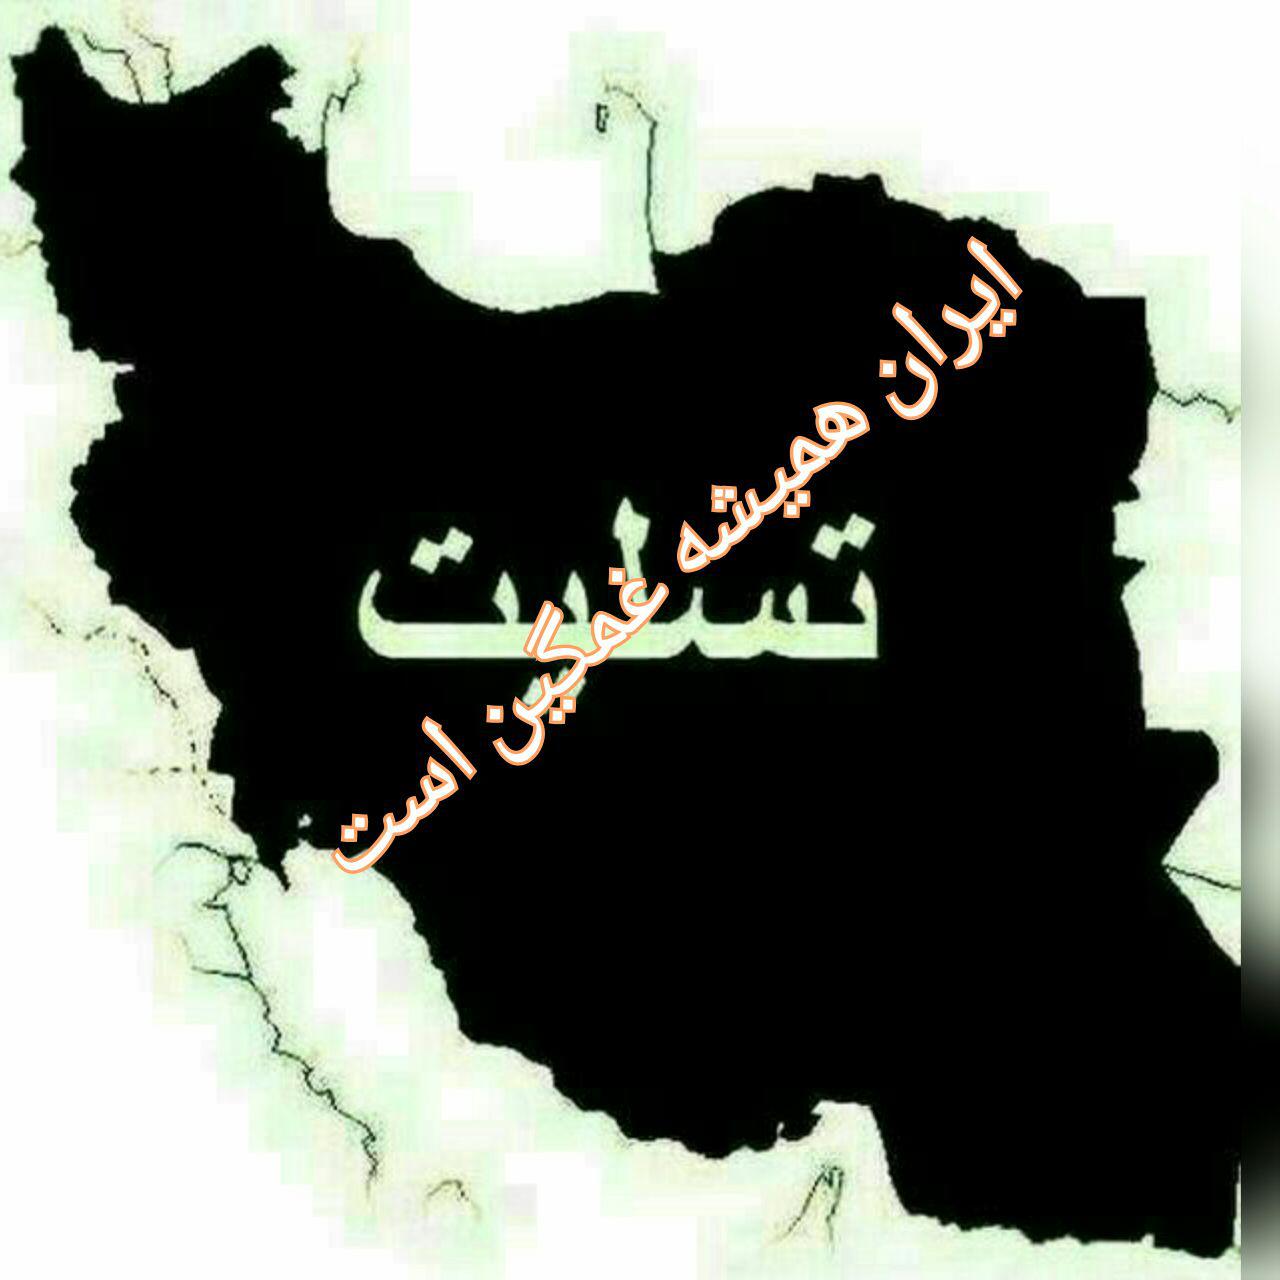 عکس غمگین نقشه ایران